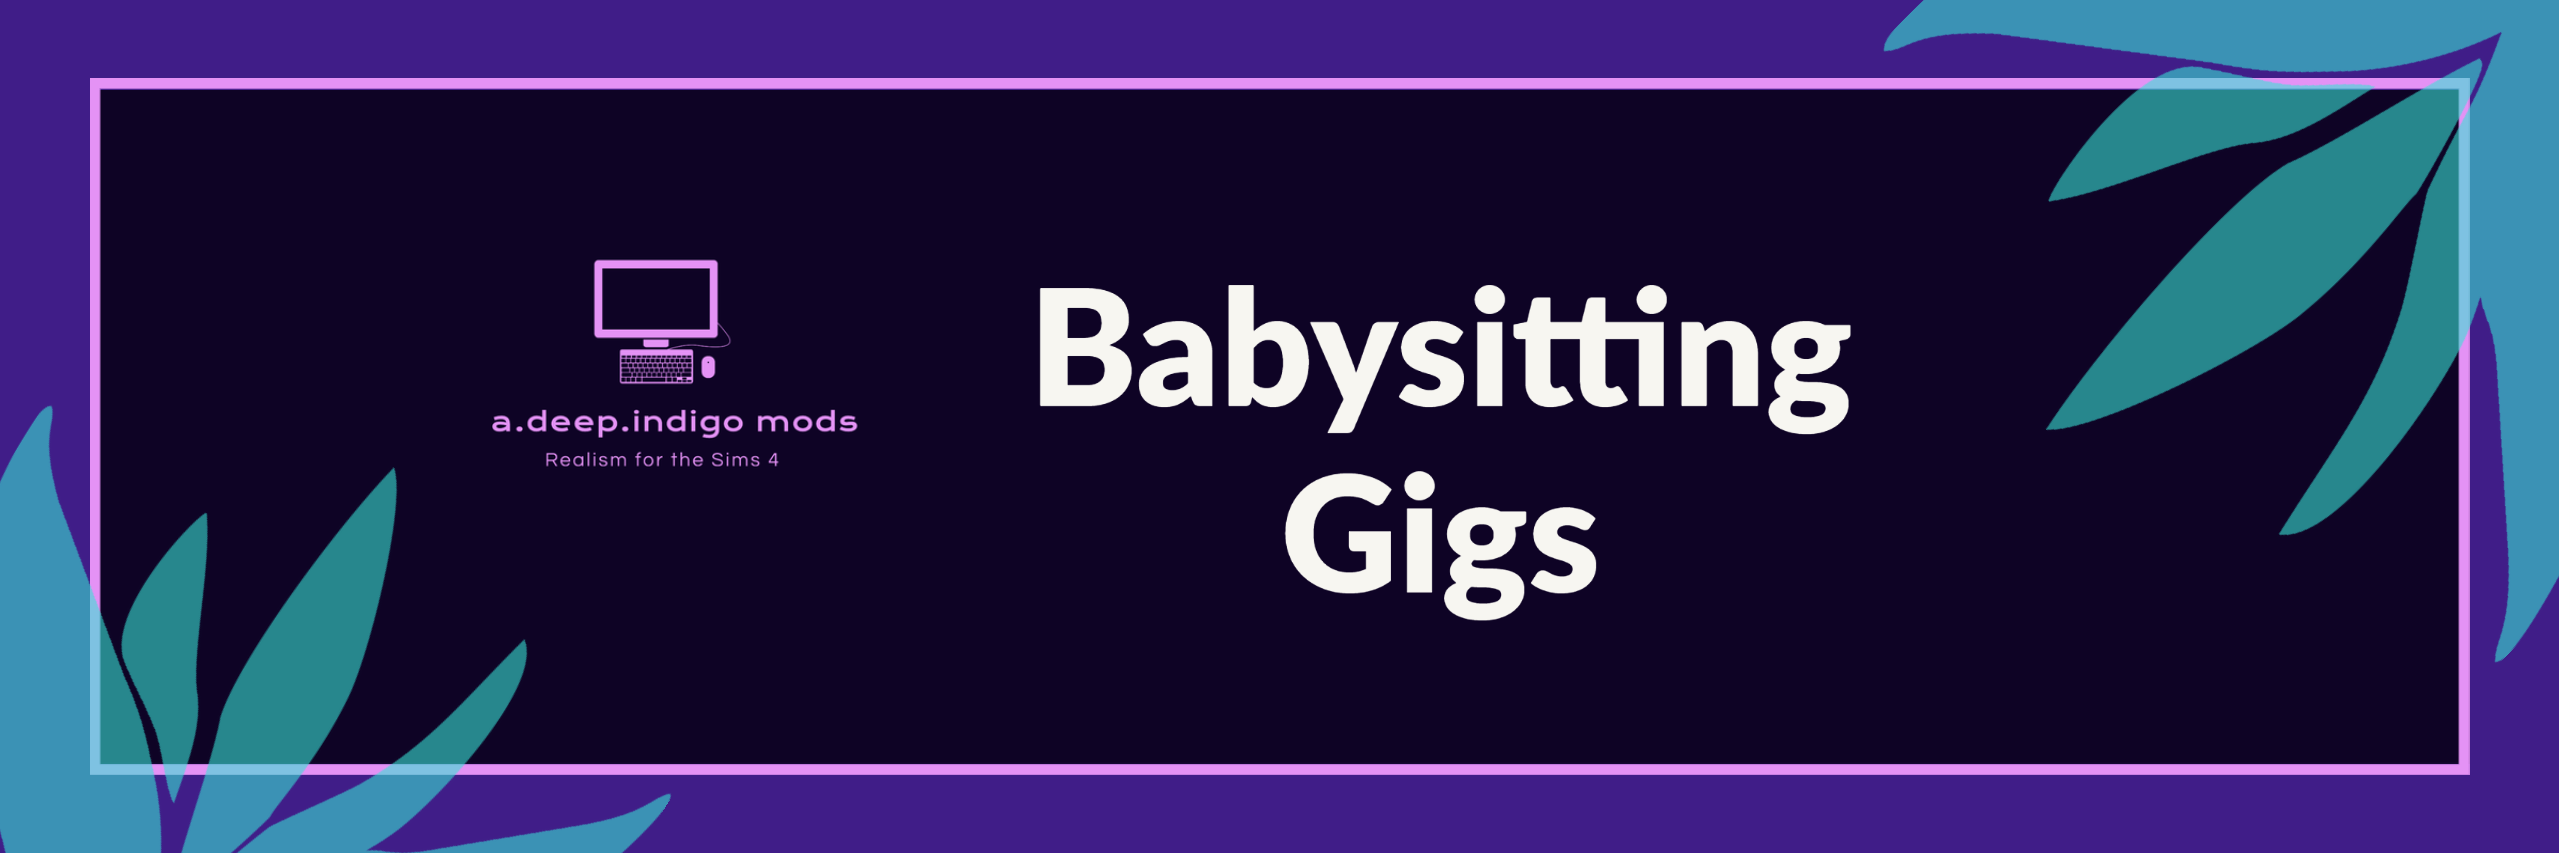 White Chicks: Babysitting Gig 